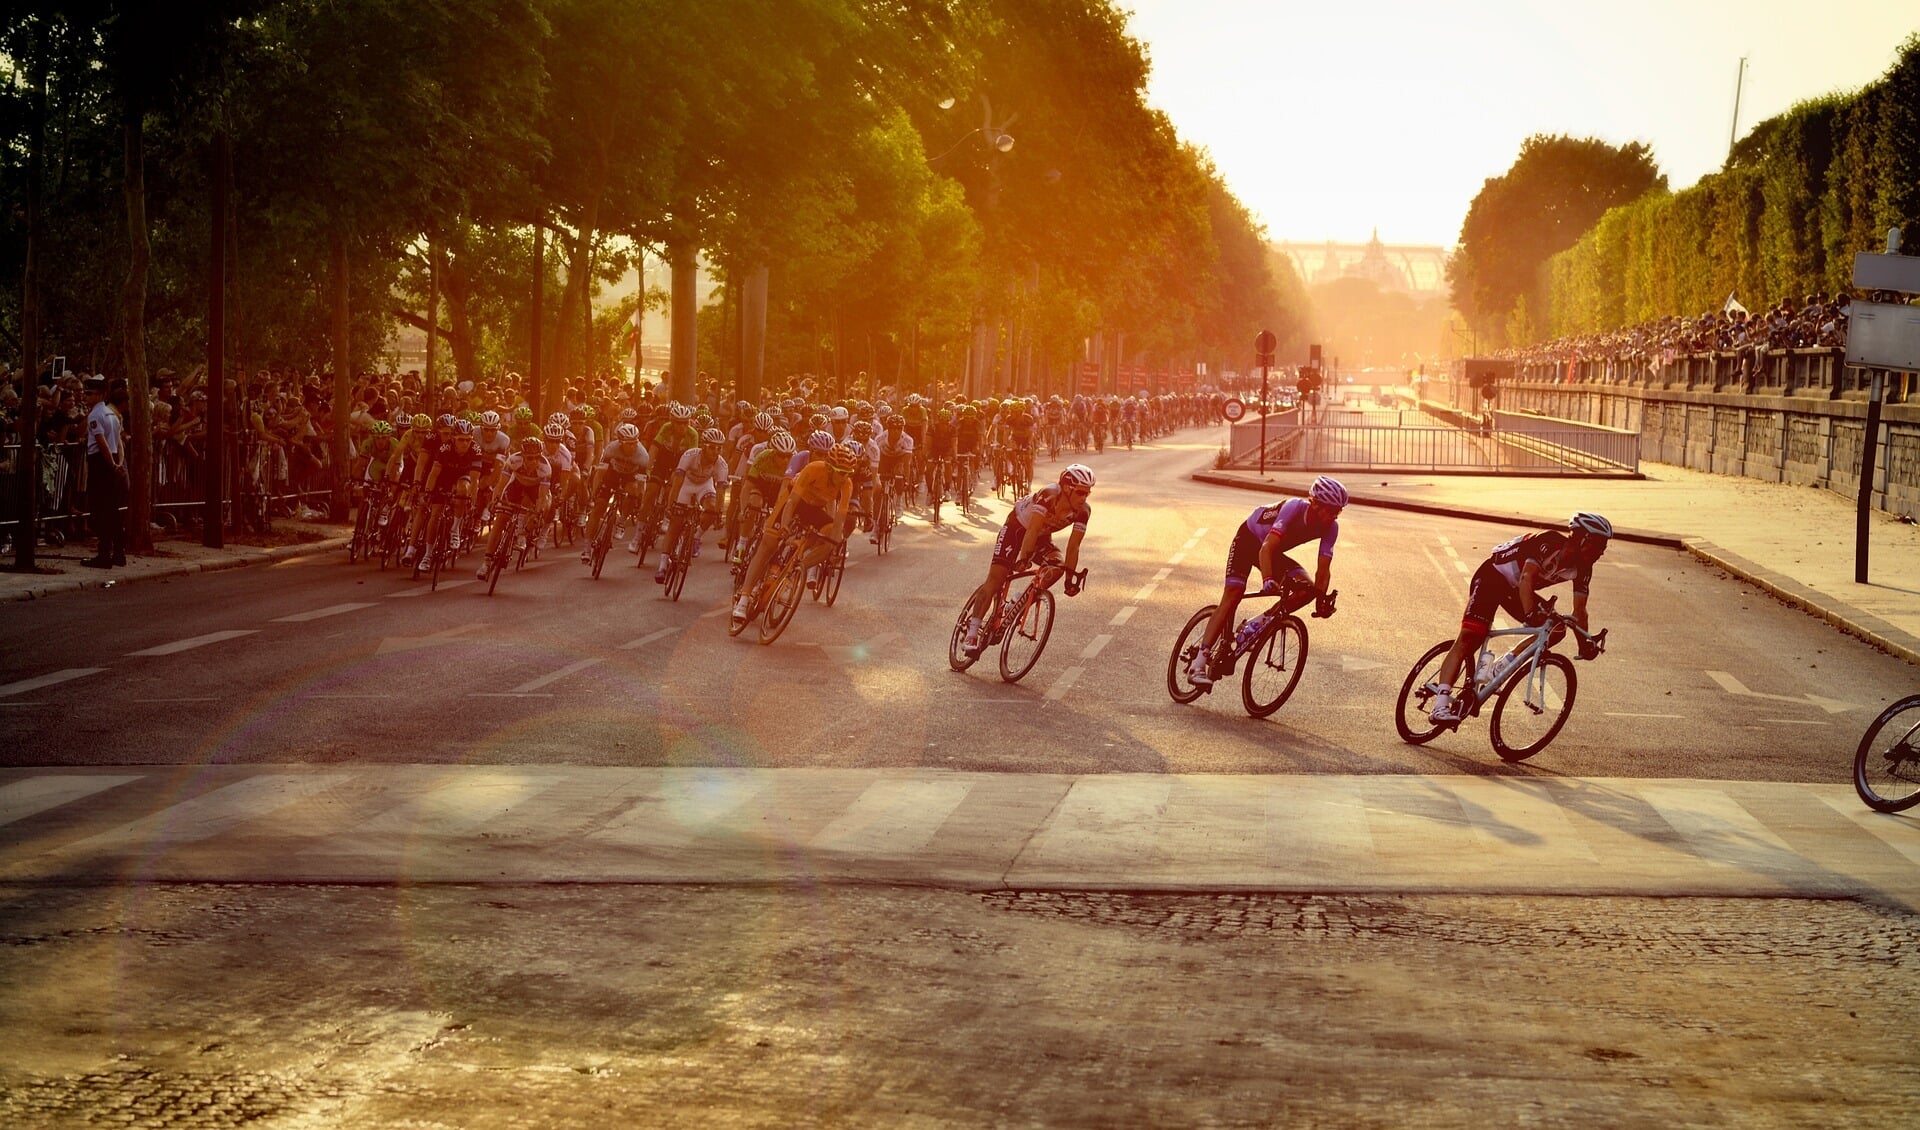 De Tour de France is zondag in Parijs geëindigd. Op naar 2023!